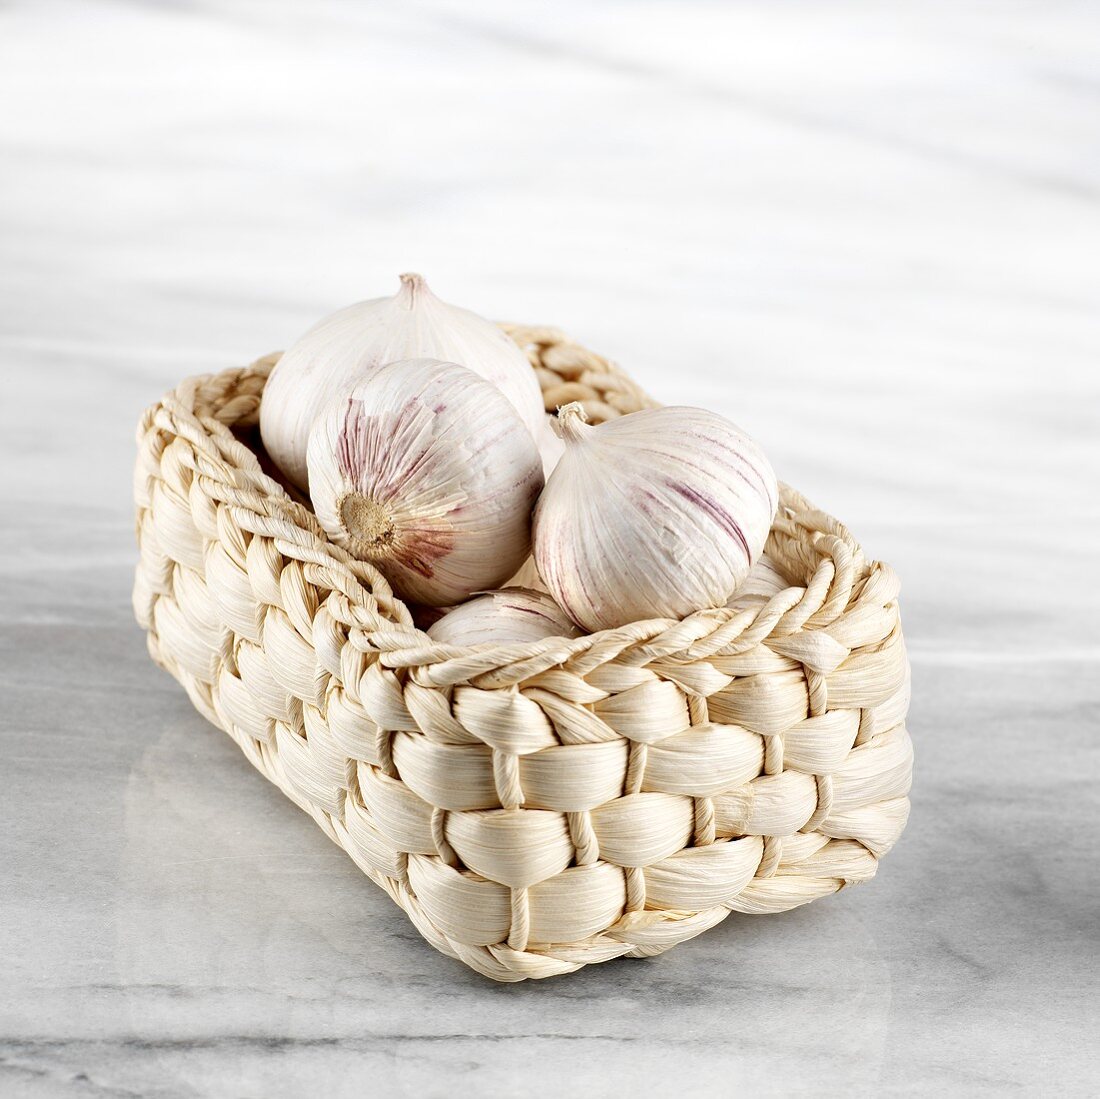 Chinese garlic in basket